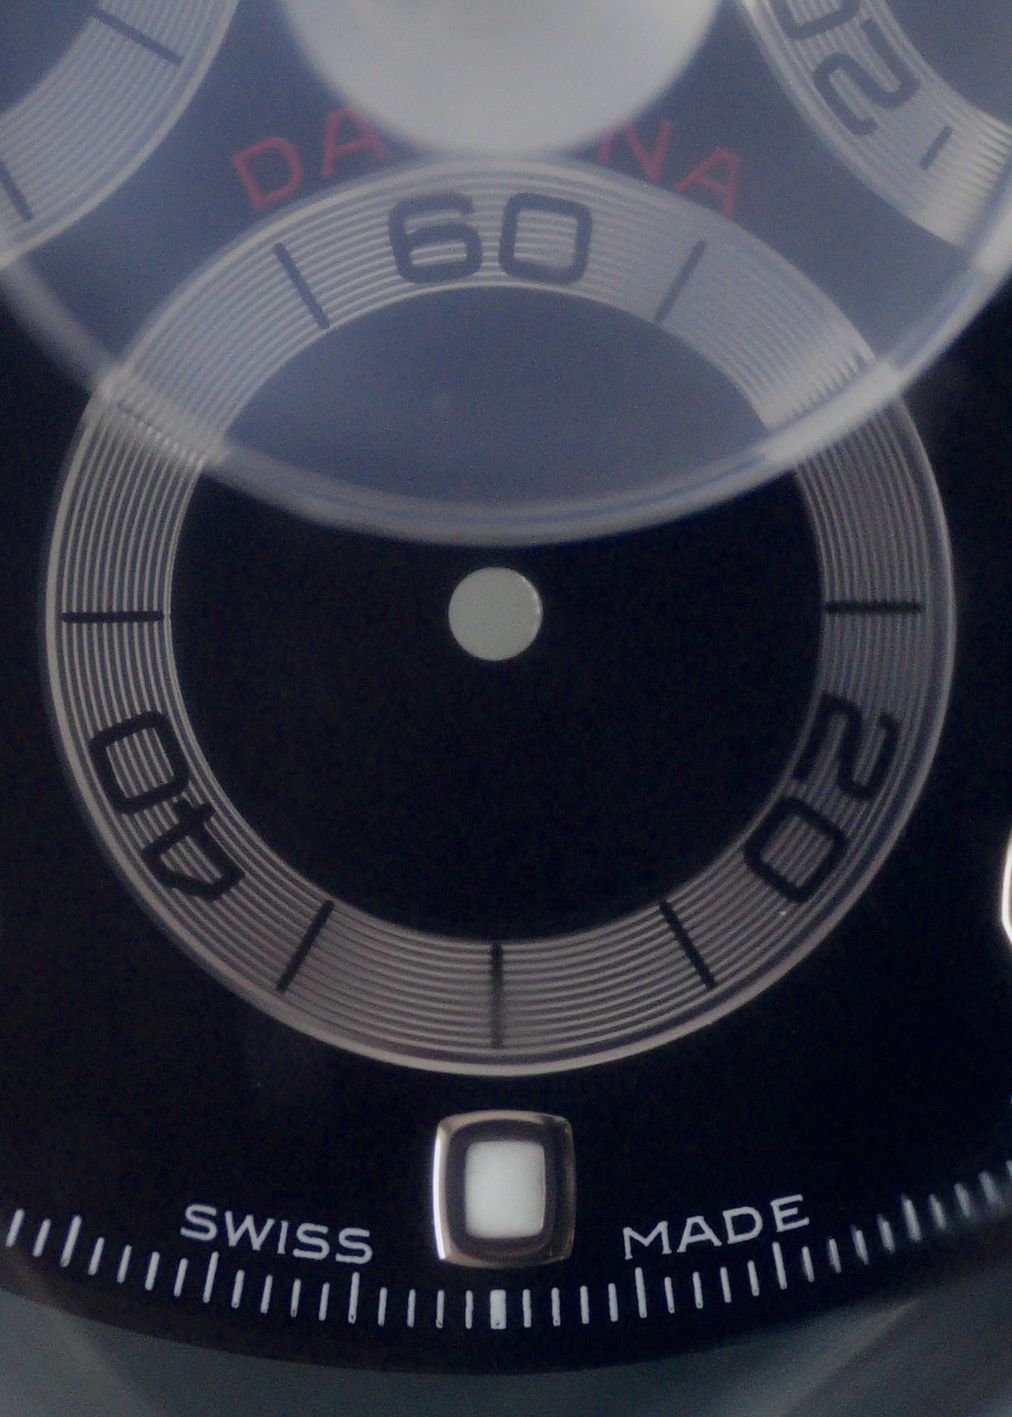 Rolex NOS dial & hands for Daytona 116520 / 116509 / 116519 Chromalight